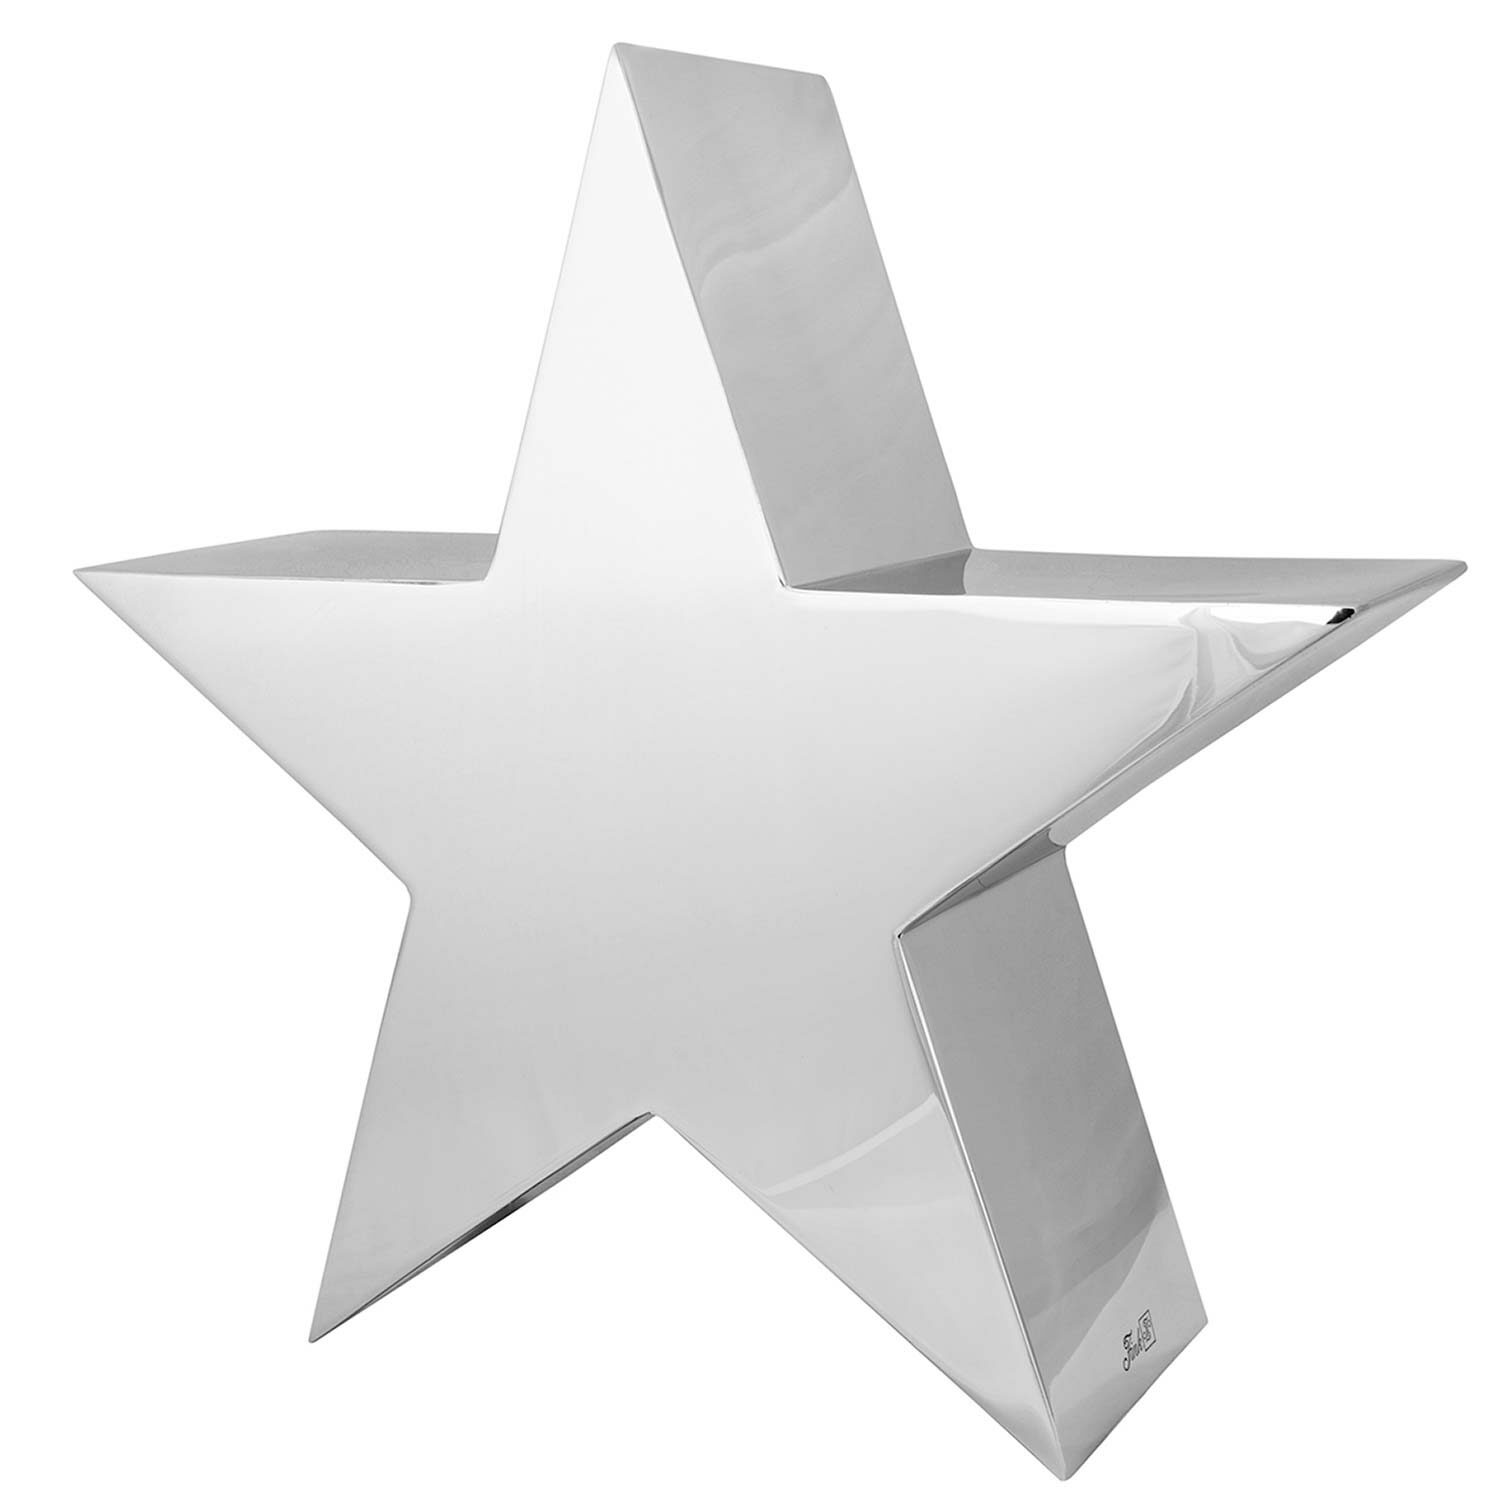 REVA star stainless steel